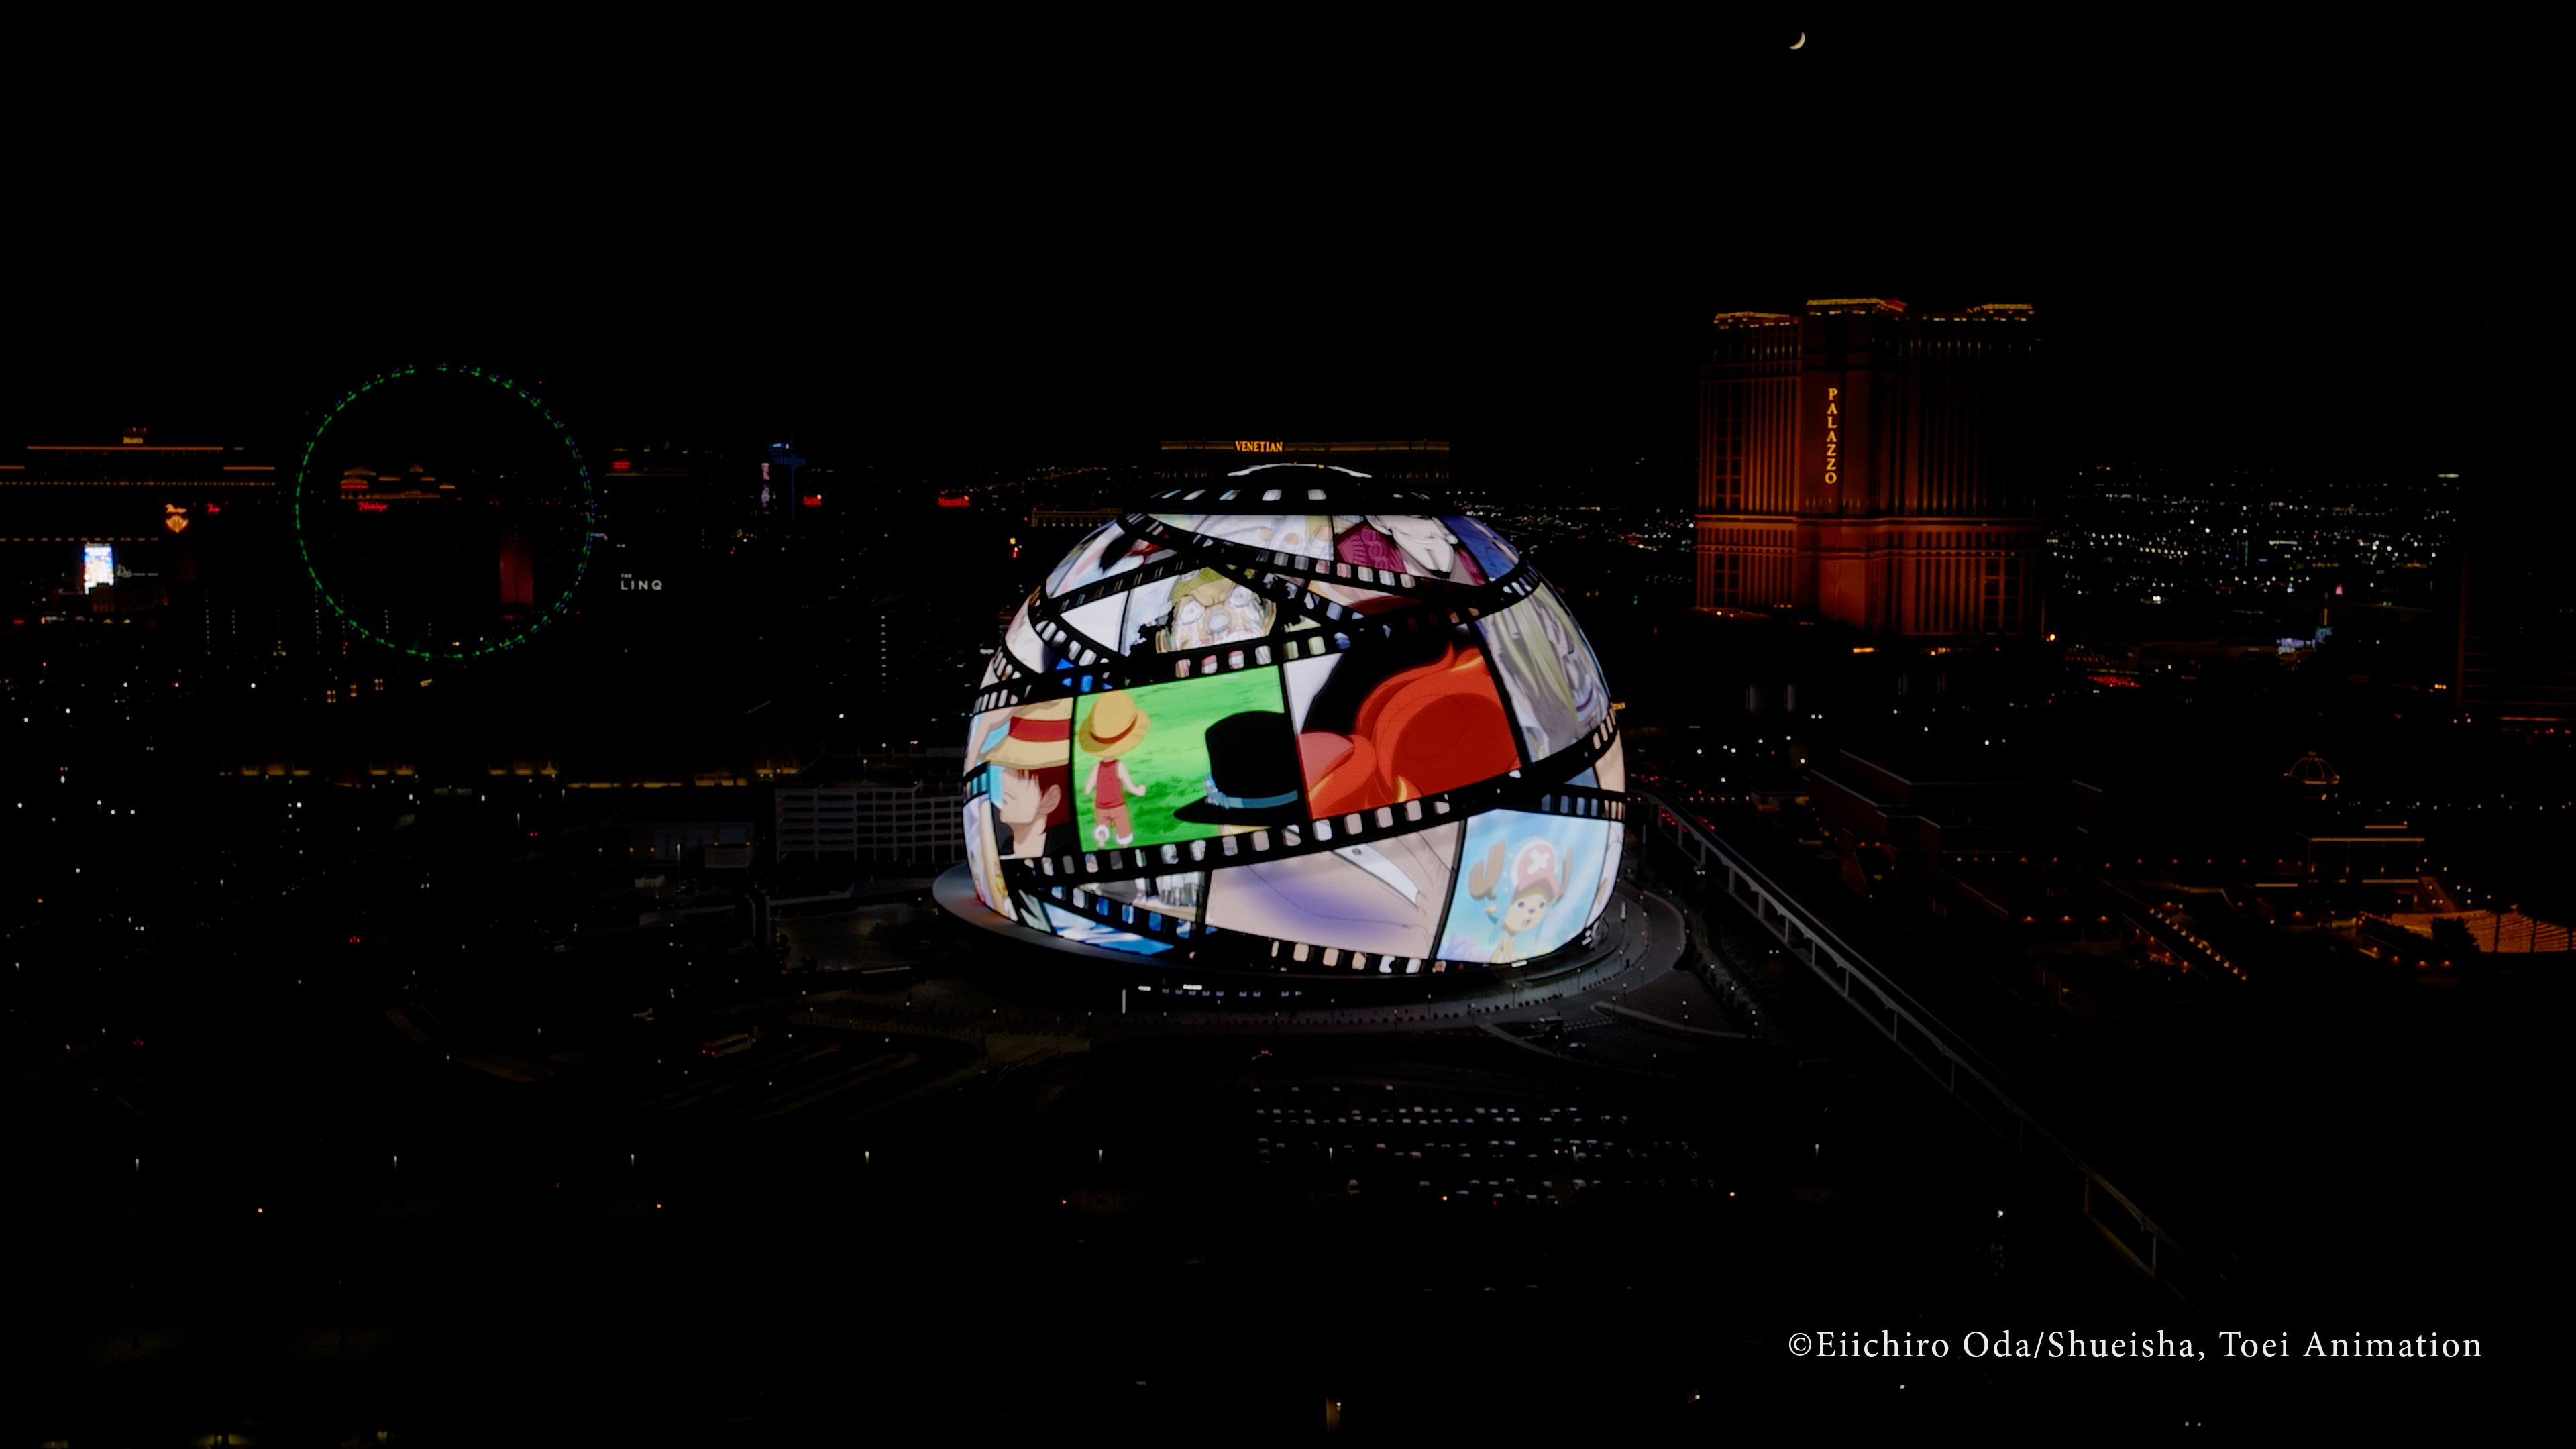 Высококачественные кадры с дрона позволяют фанатам One Piece лучше рассмотреть сферу Лас-Вегаса